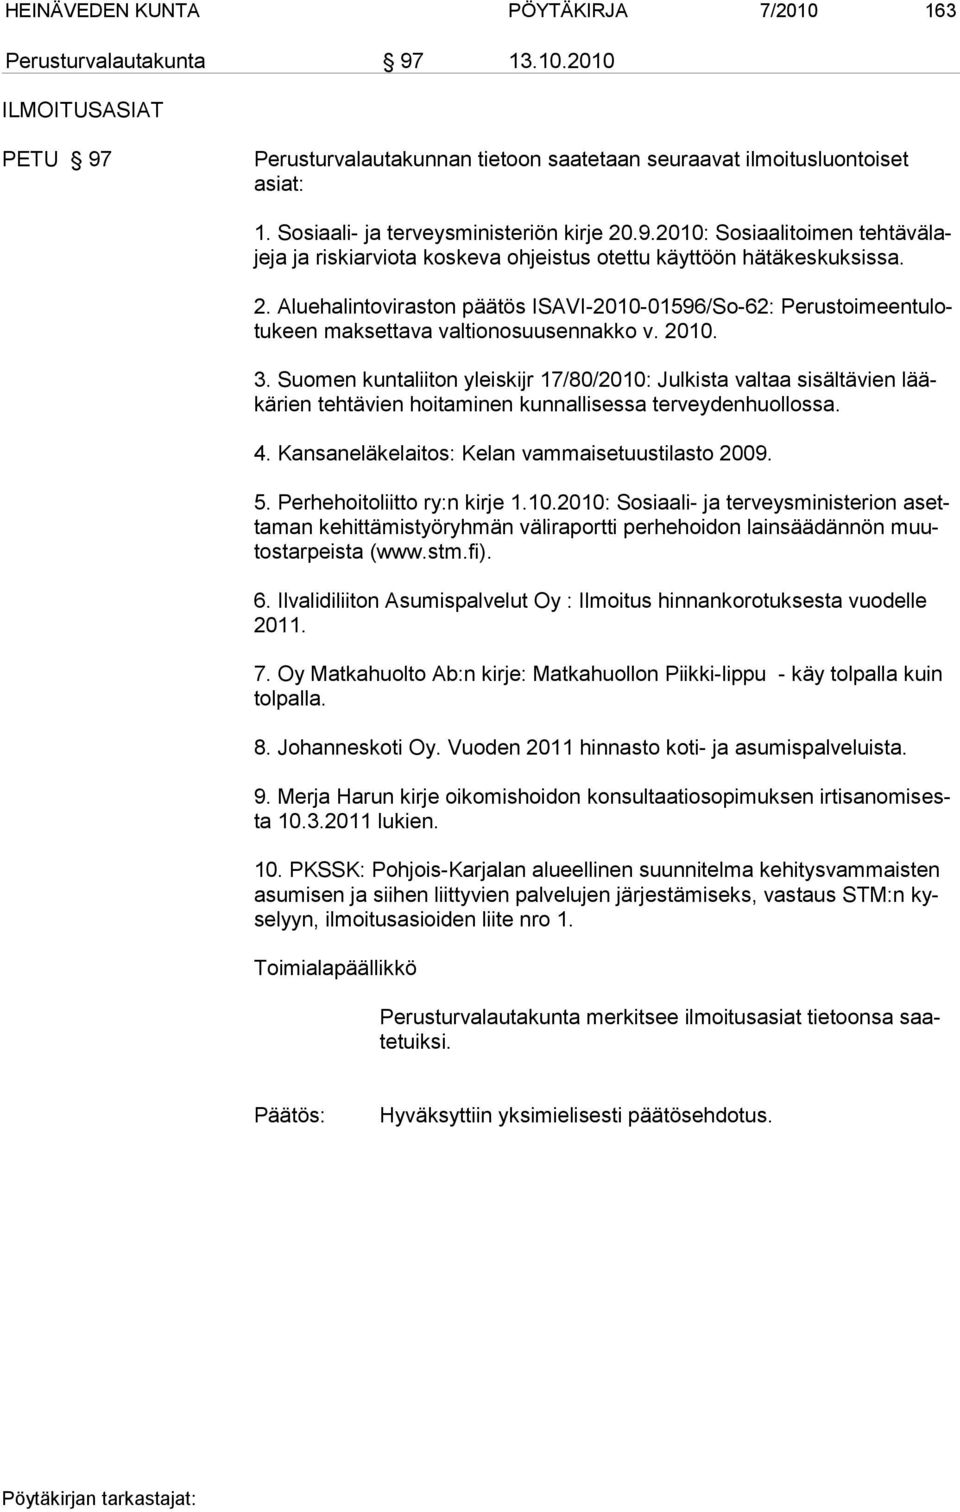 2010. 3. Suomen kuntaliiton yleiskijr 17/80/2010: Julkista valtaa sisältävien lääkärien tehtävien hoitaminen kunnallisessa terveydenhuollossa. 4. Kansaneläkelaitos: Kelan vammaisetuustilasto 2009. 5.